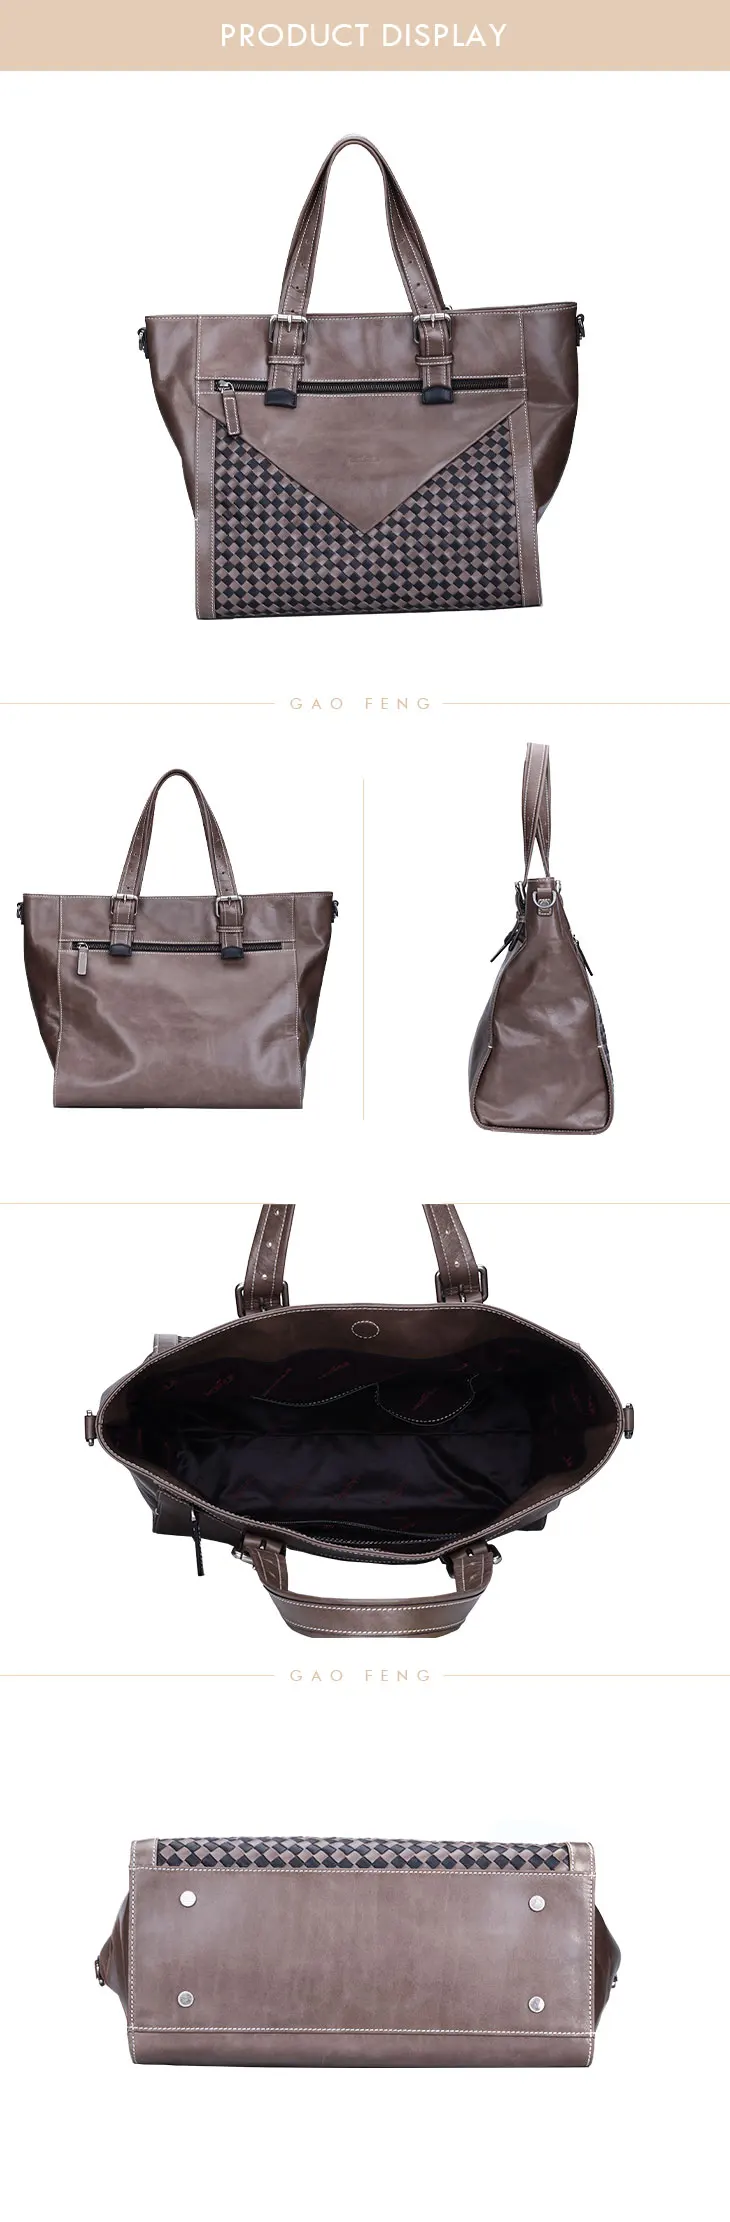 2019 latest branded hand bags for women trendy popular handbags women